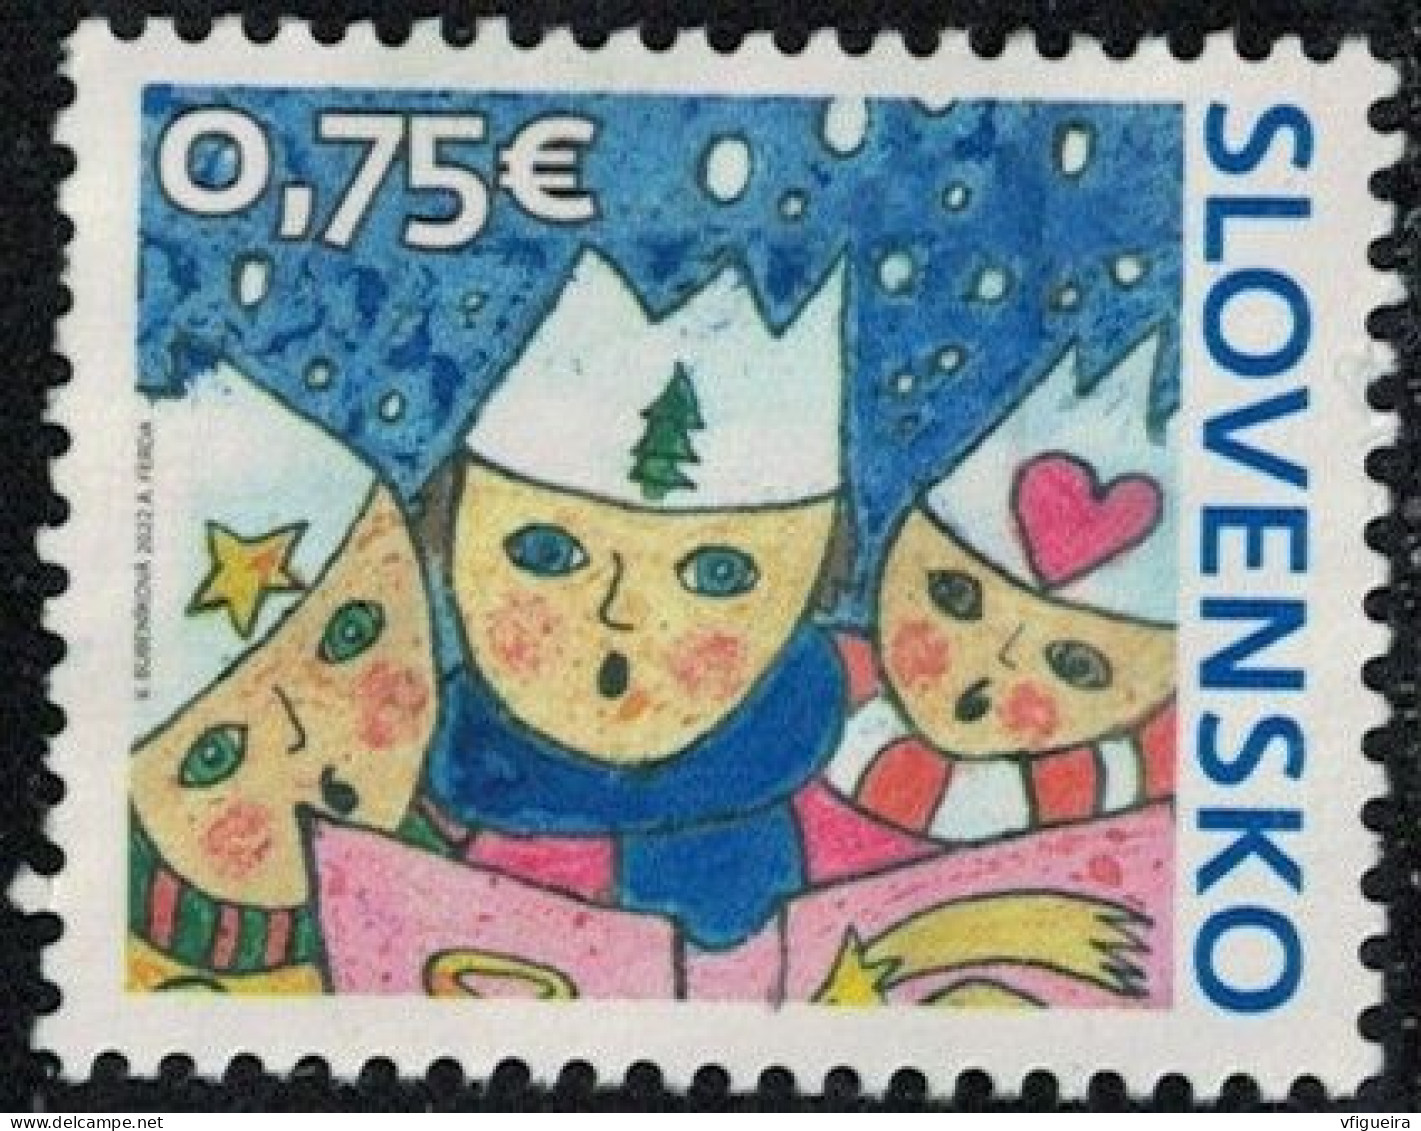 Slovaquie 2016 Used Christmas Carolers Chanteurs De Noël Y&T SK 864 SU - Nuevos